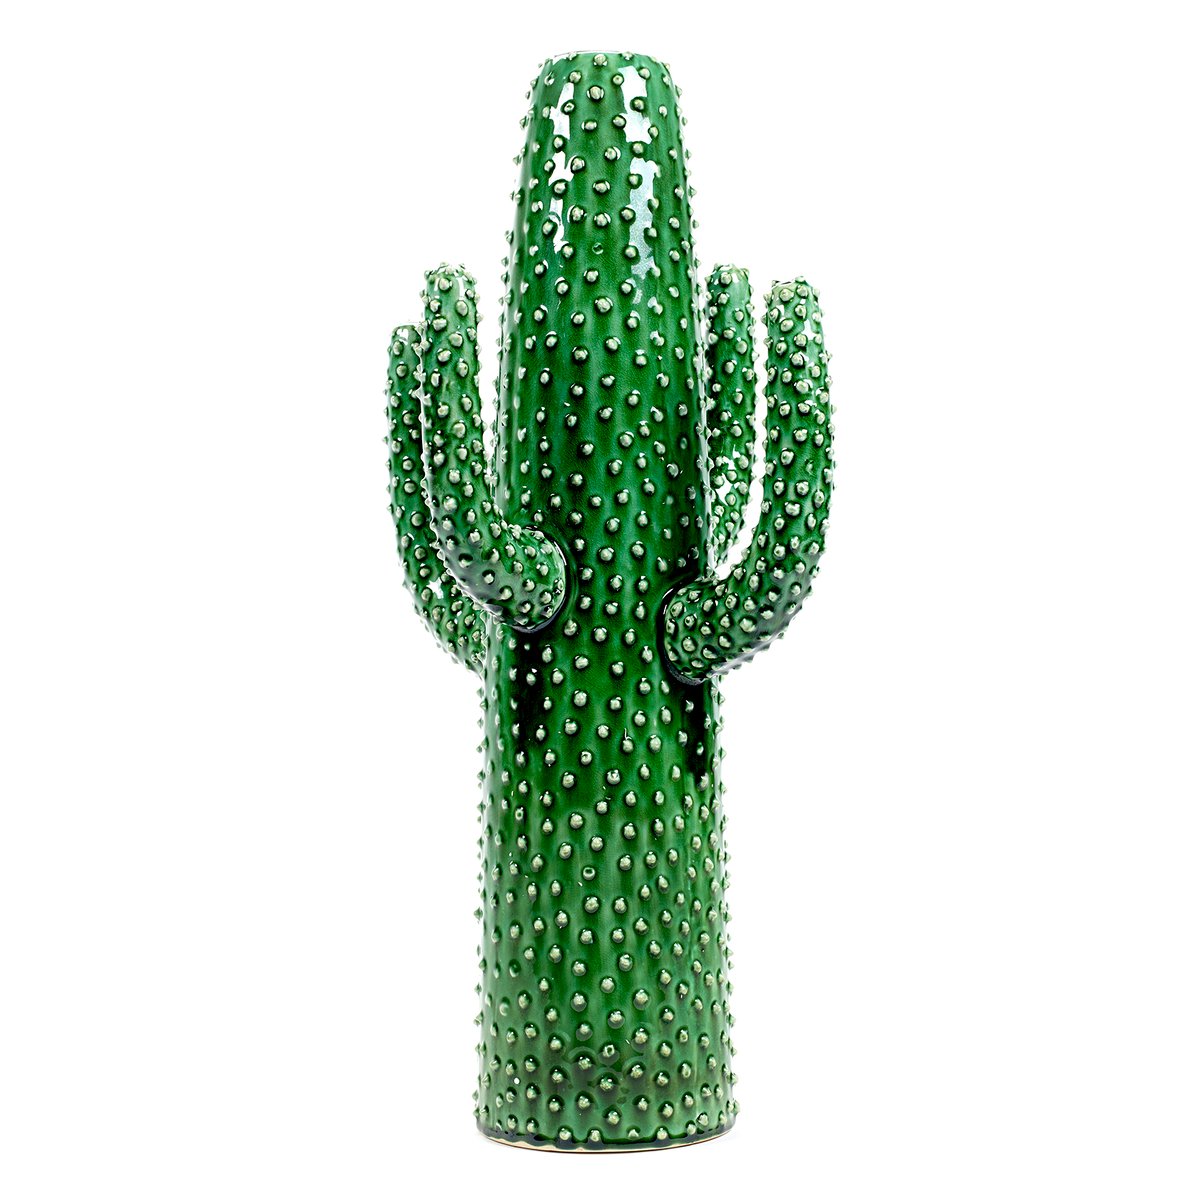 Serax Serax cactusvaas X-large